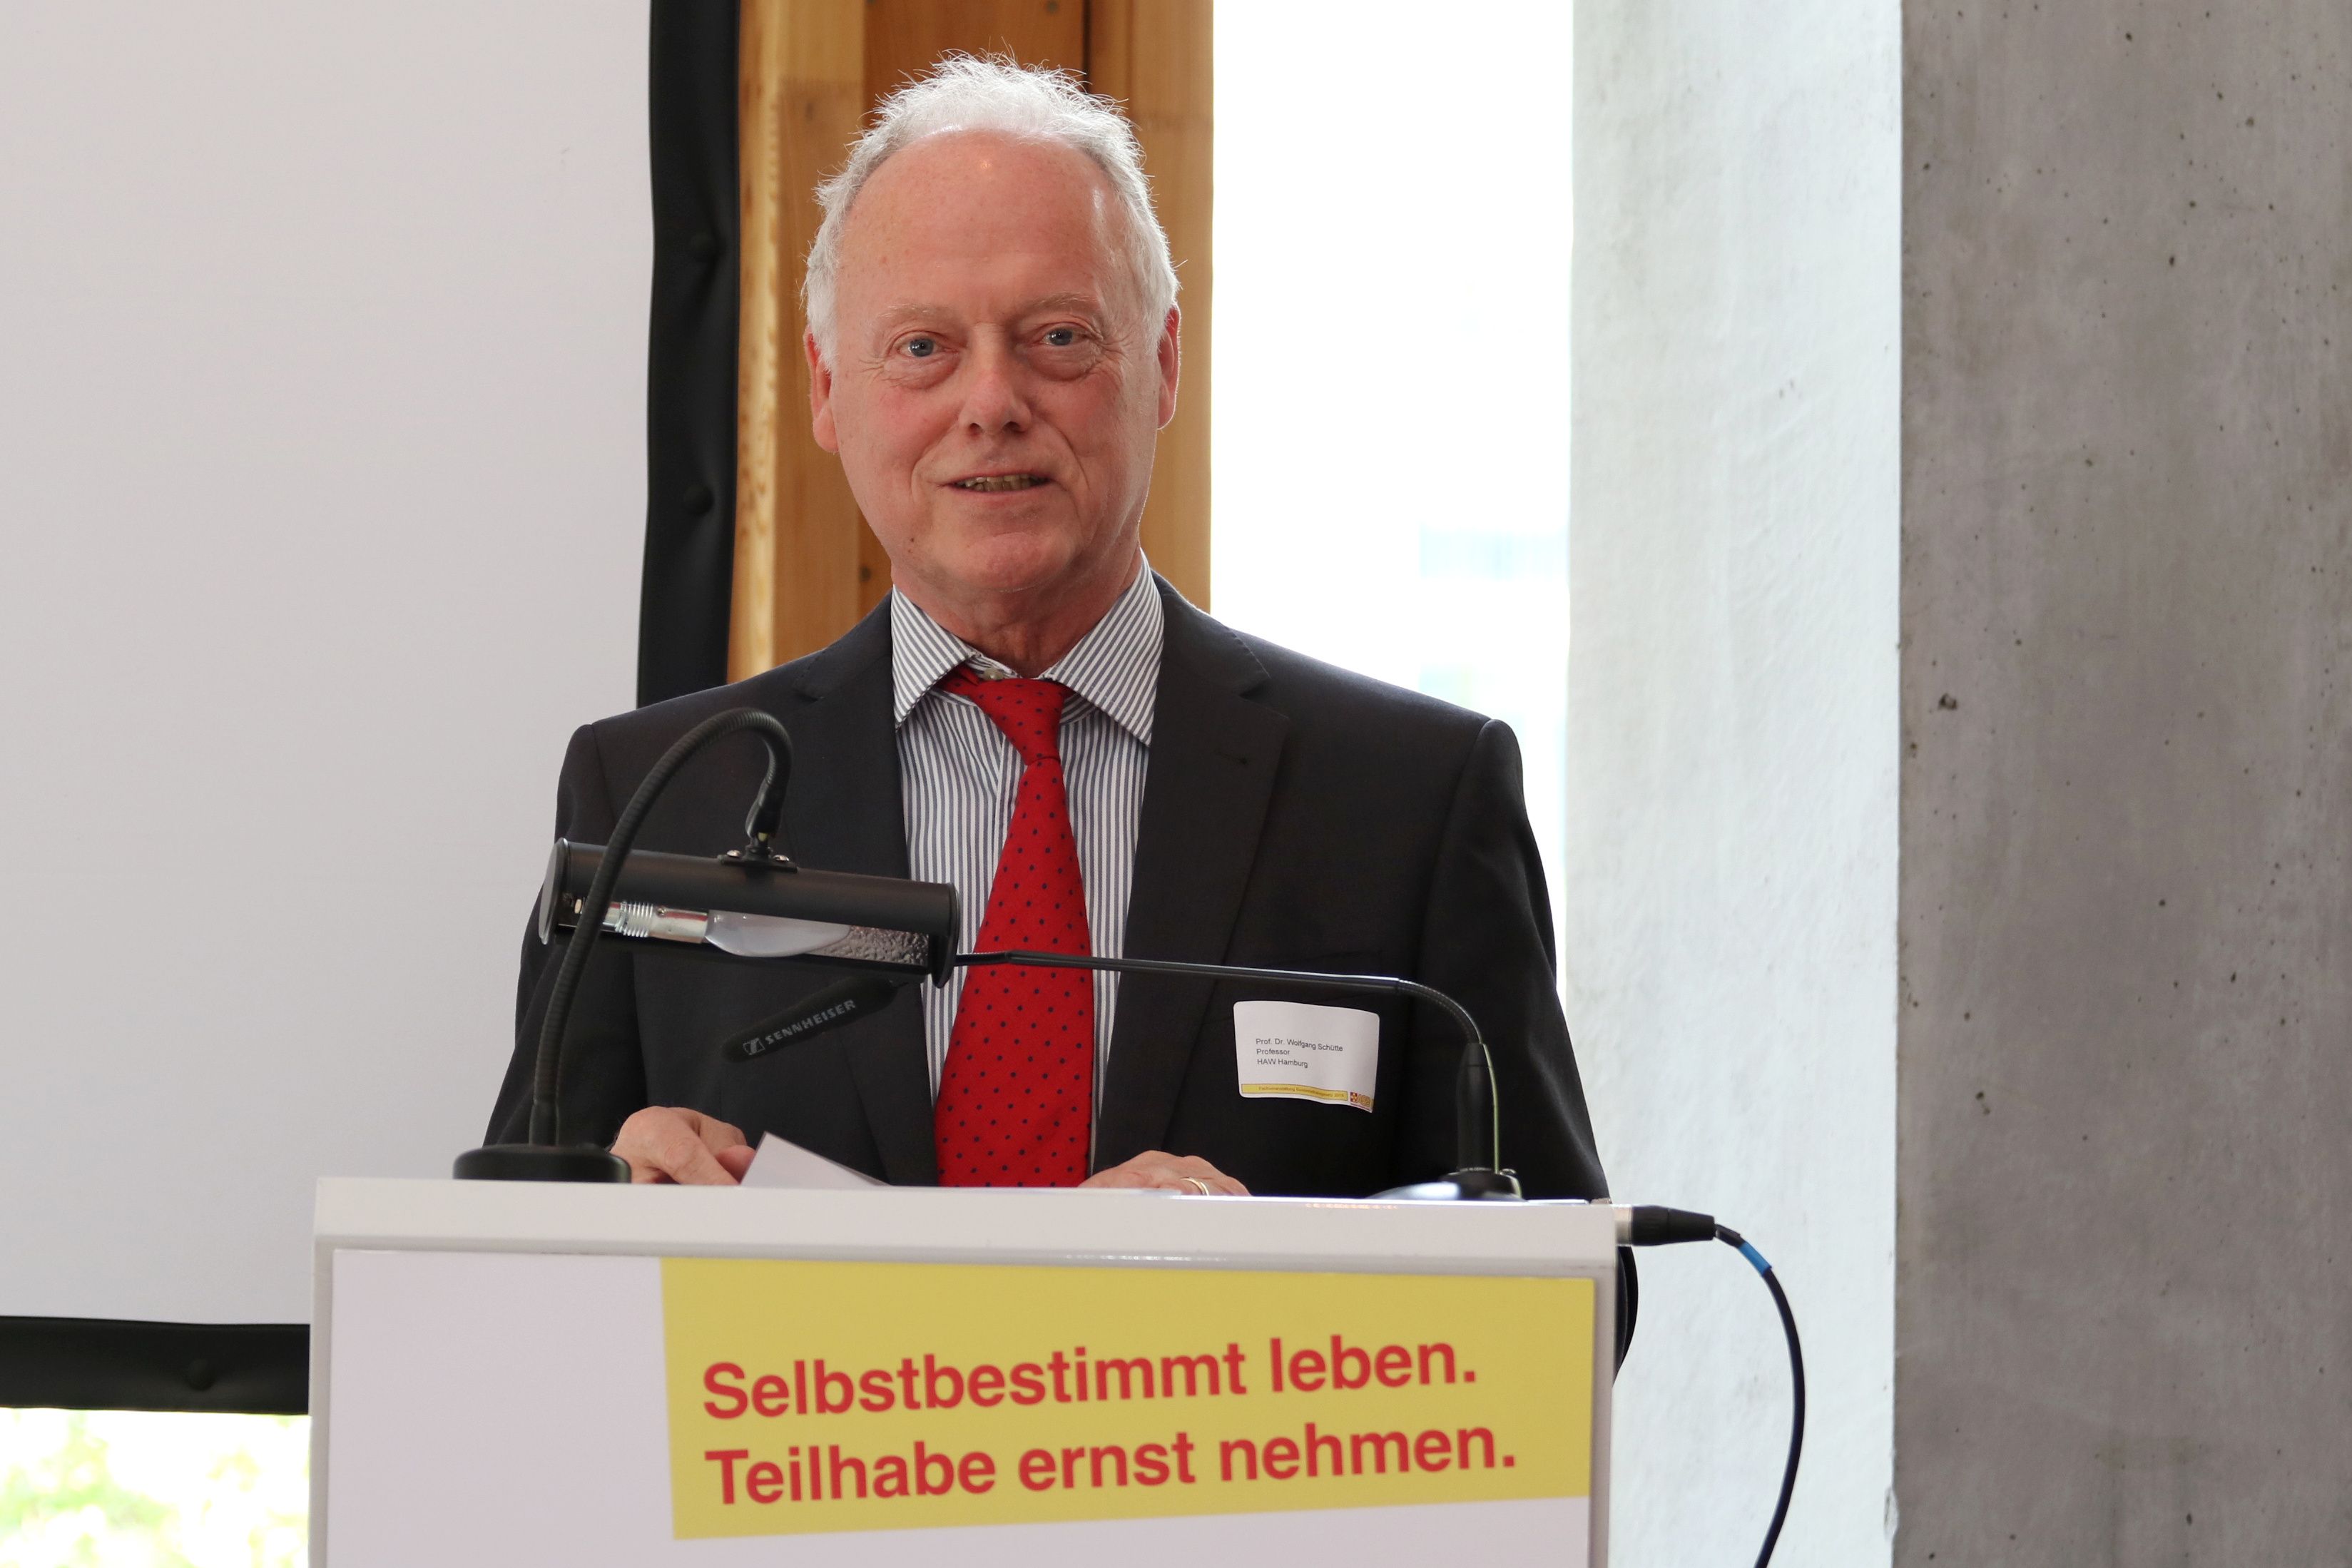 Prof. Dr. Wolfgang Schütte